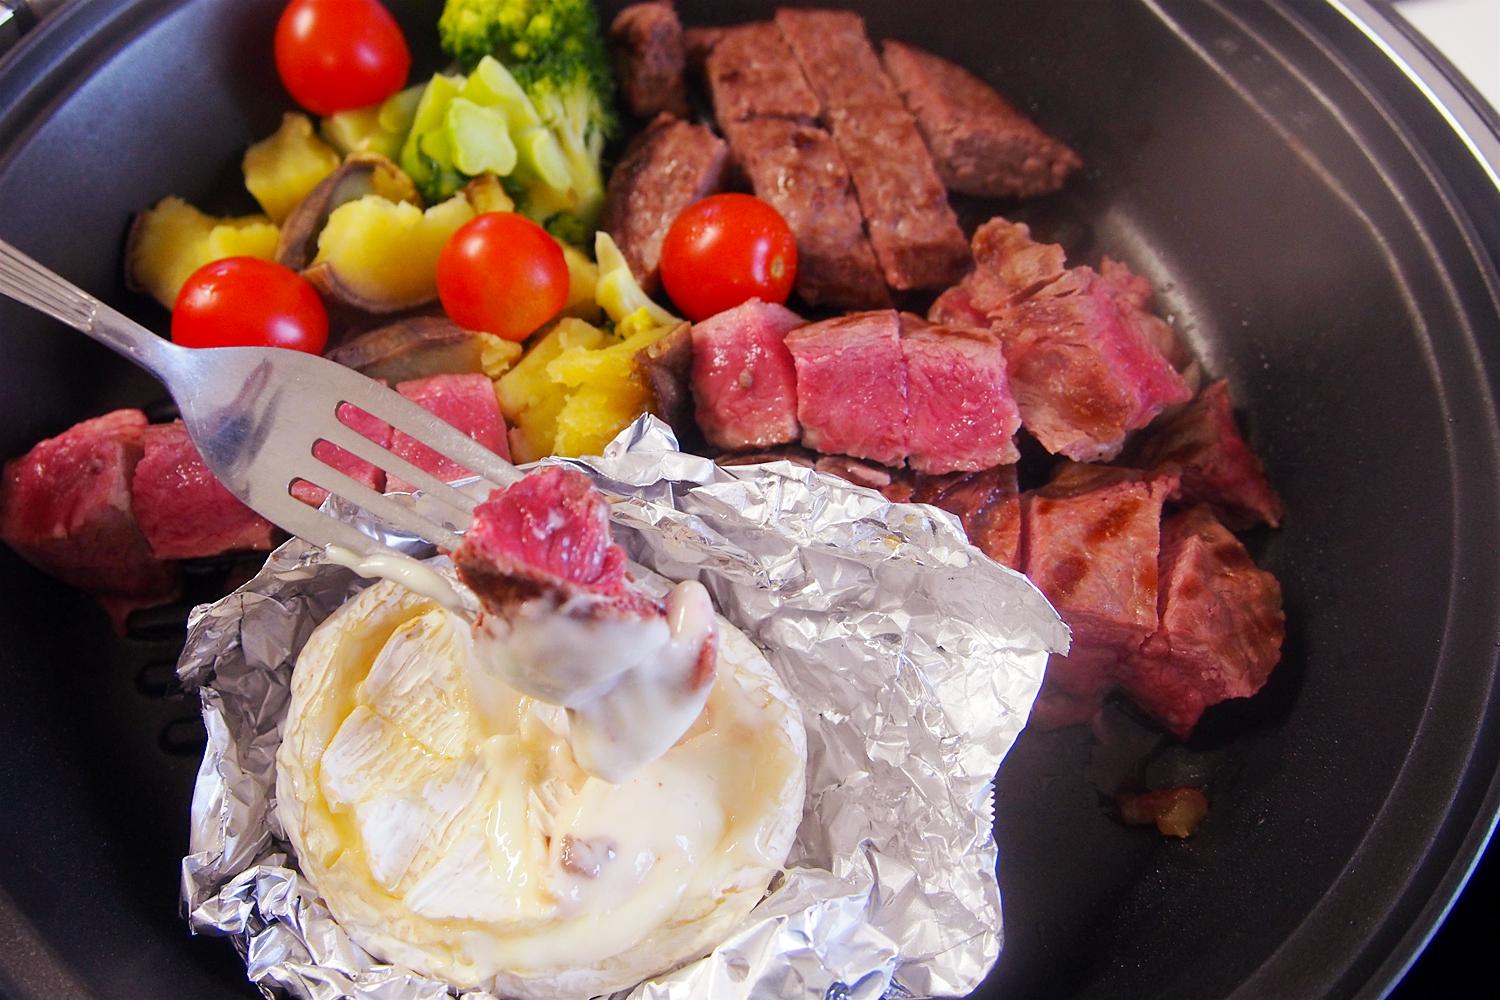 ホットプレートでつくる簡単お肉レシピ メインも副菜も一気にできる ミートガイ